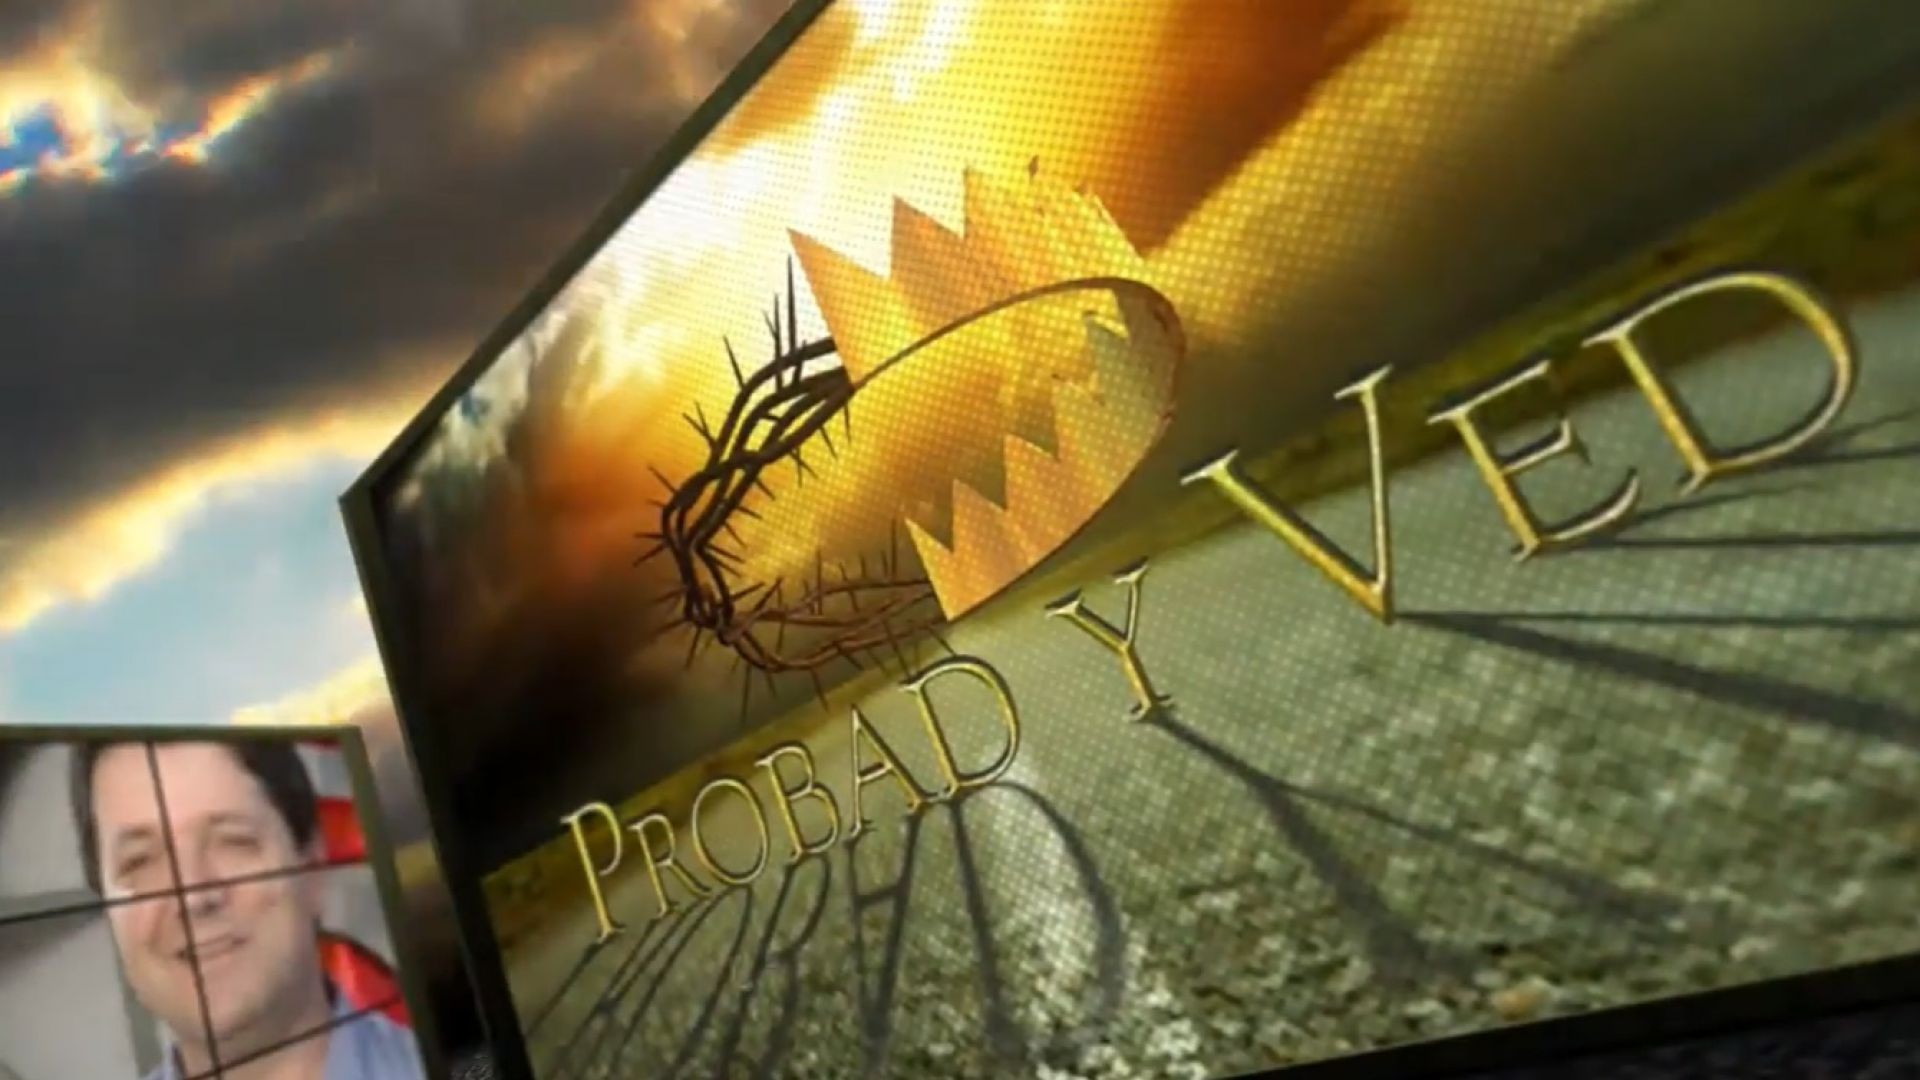 Probad y Ved 2012 - Bendecidos por Dios